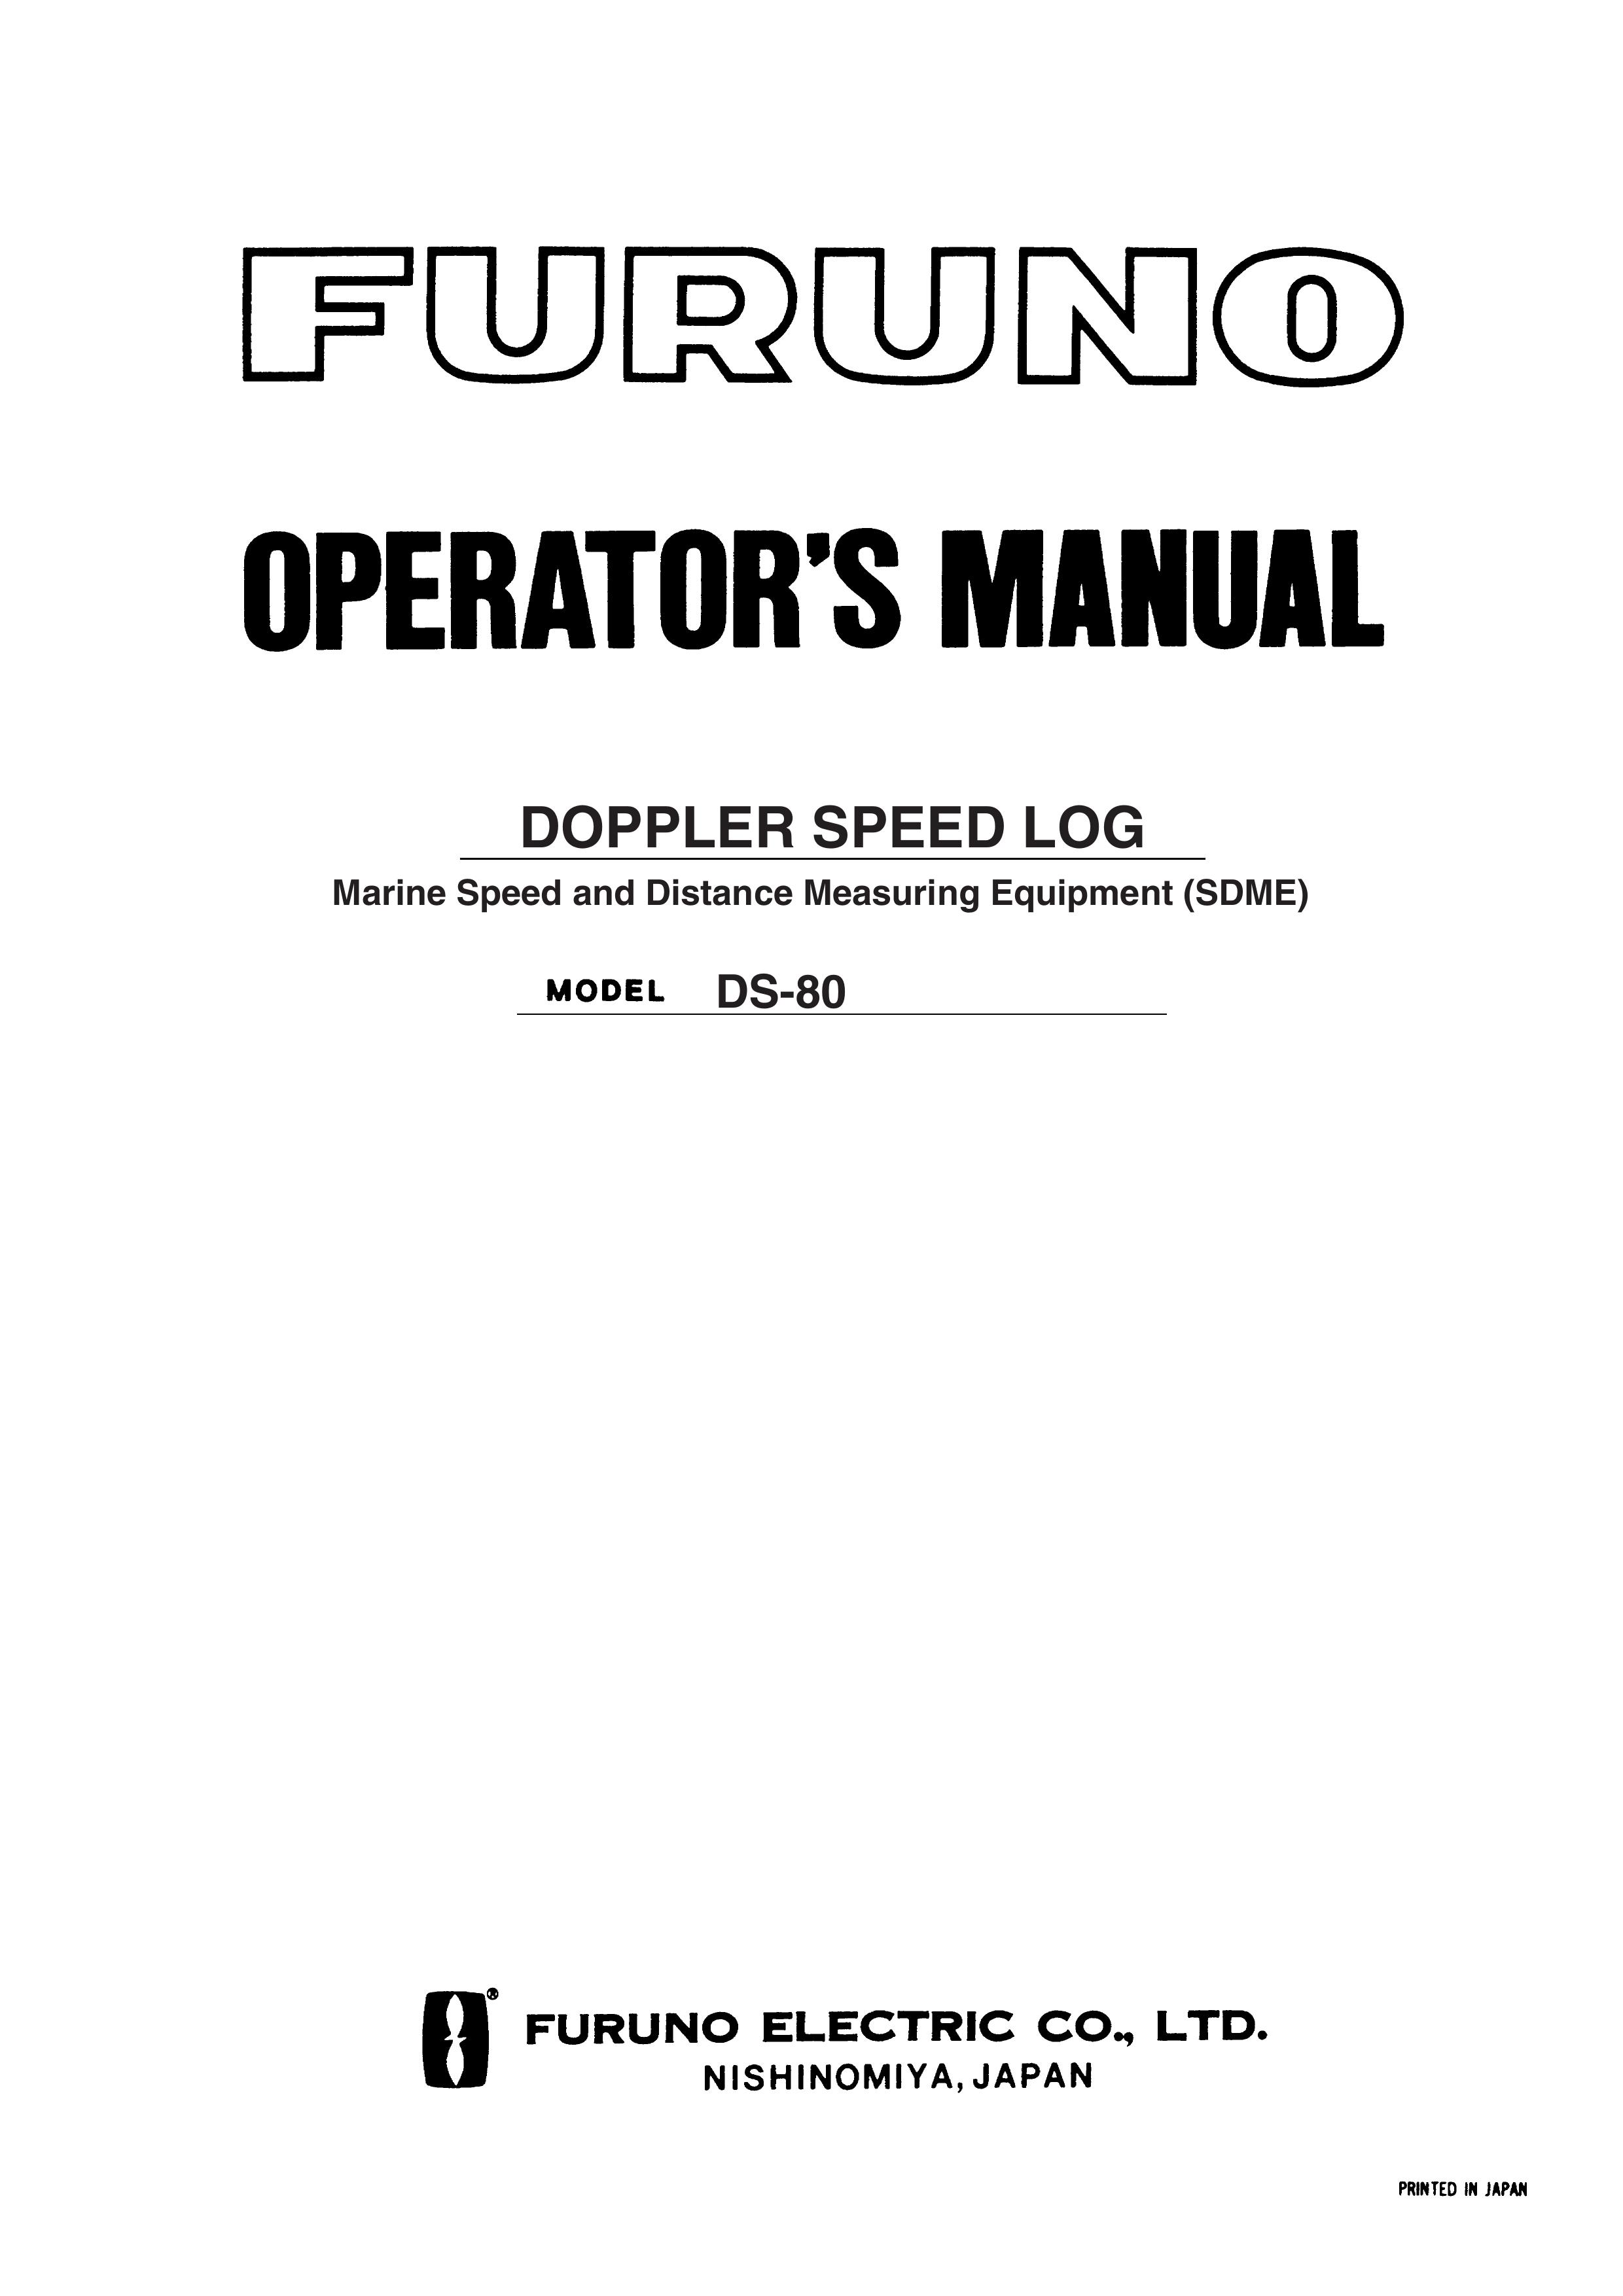 Furuno DS-80 SONAR User Manual